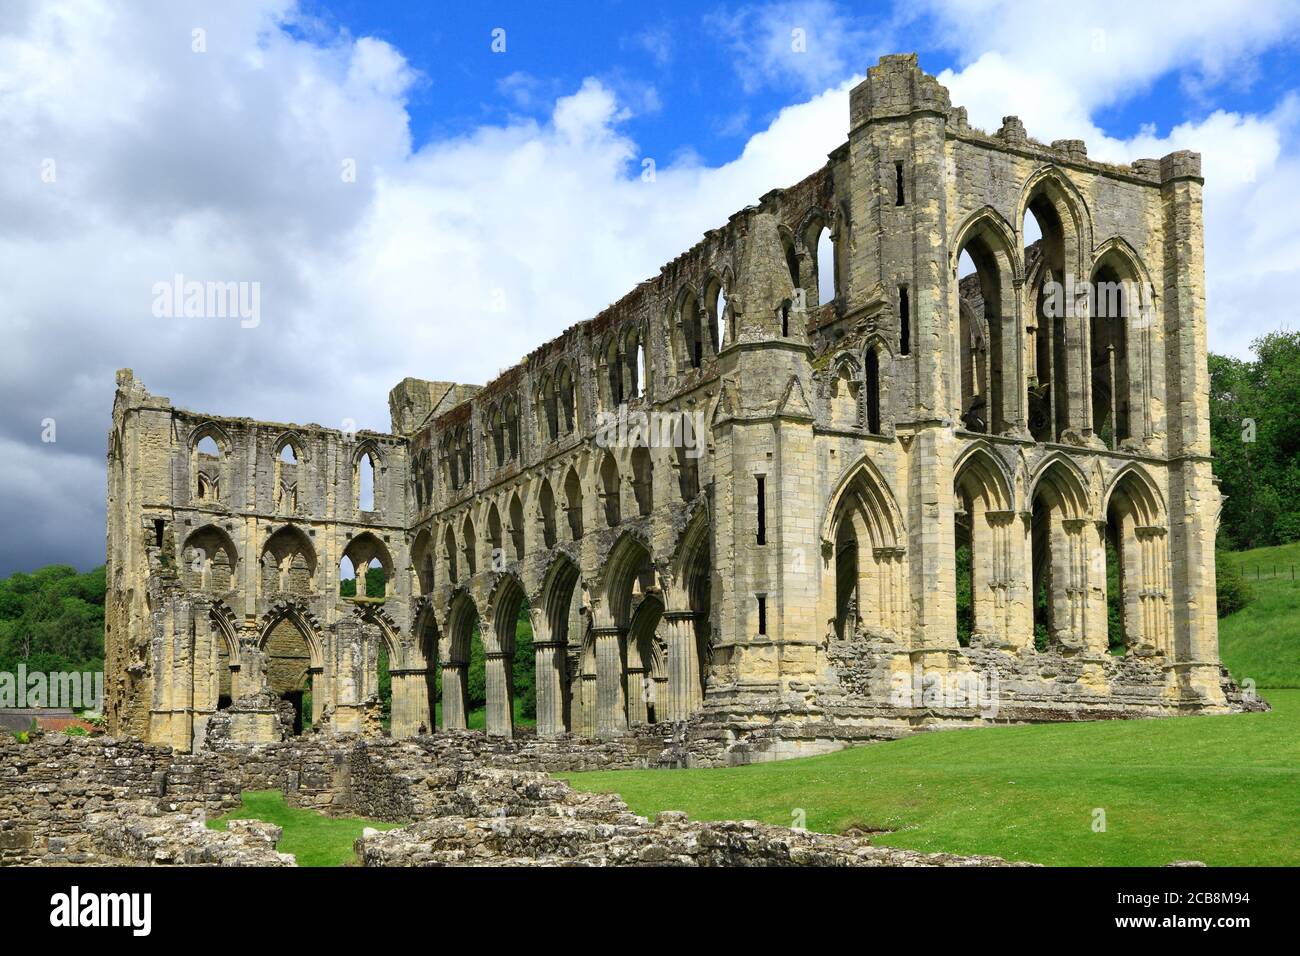 Abbaye de Rievaulx, cistercienne, monastère, médiévale, ruines, Yorkshire de Norrth 3 Banque D'Images